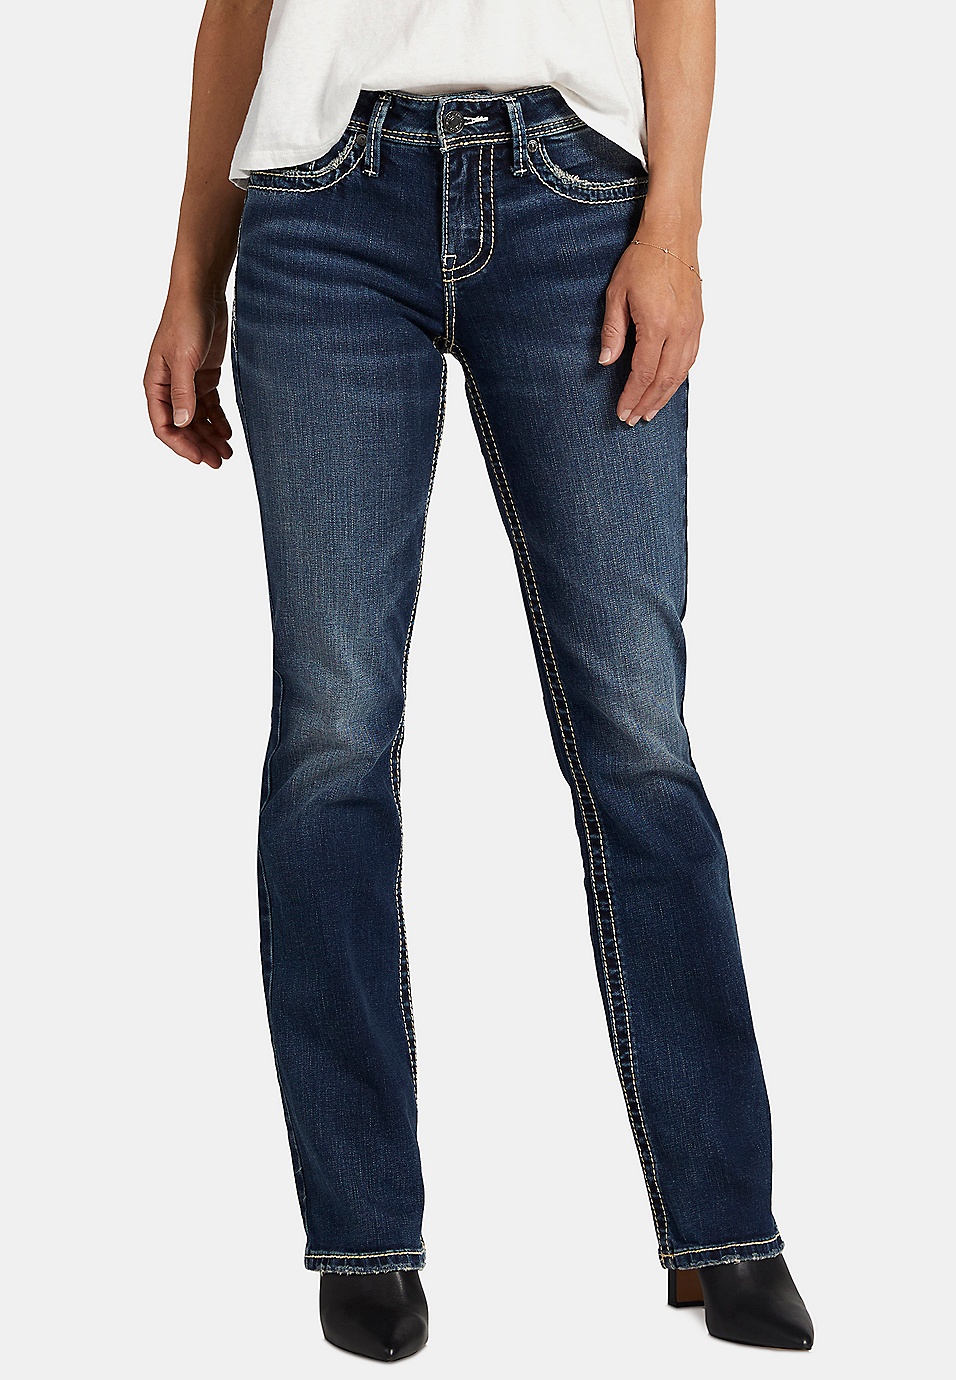 Risen Jeans Sizing Chart – A-LIST BOUTIQUE